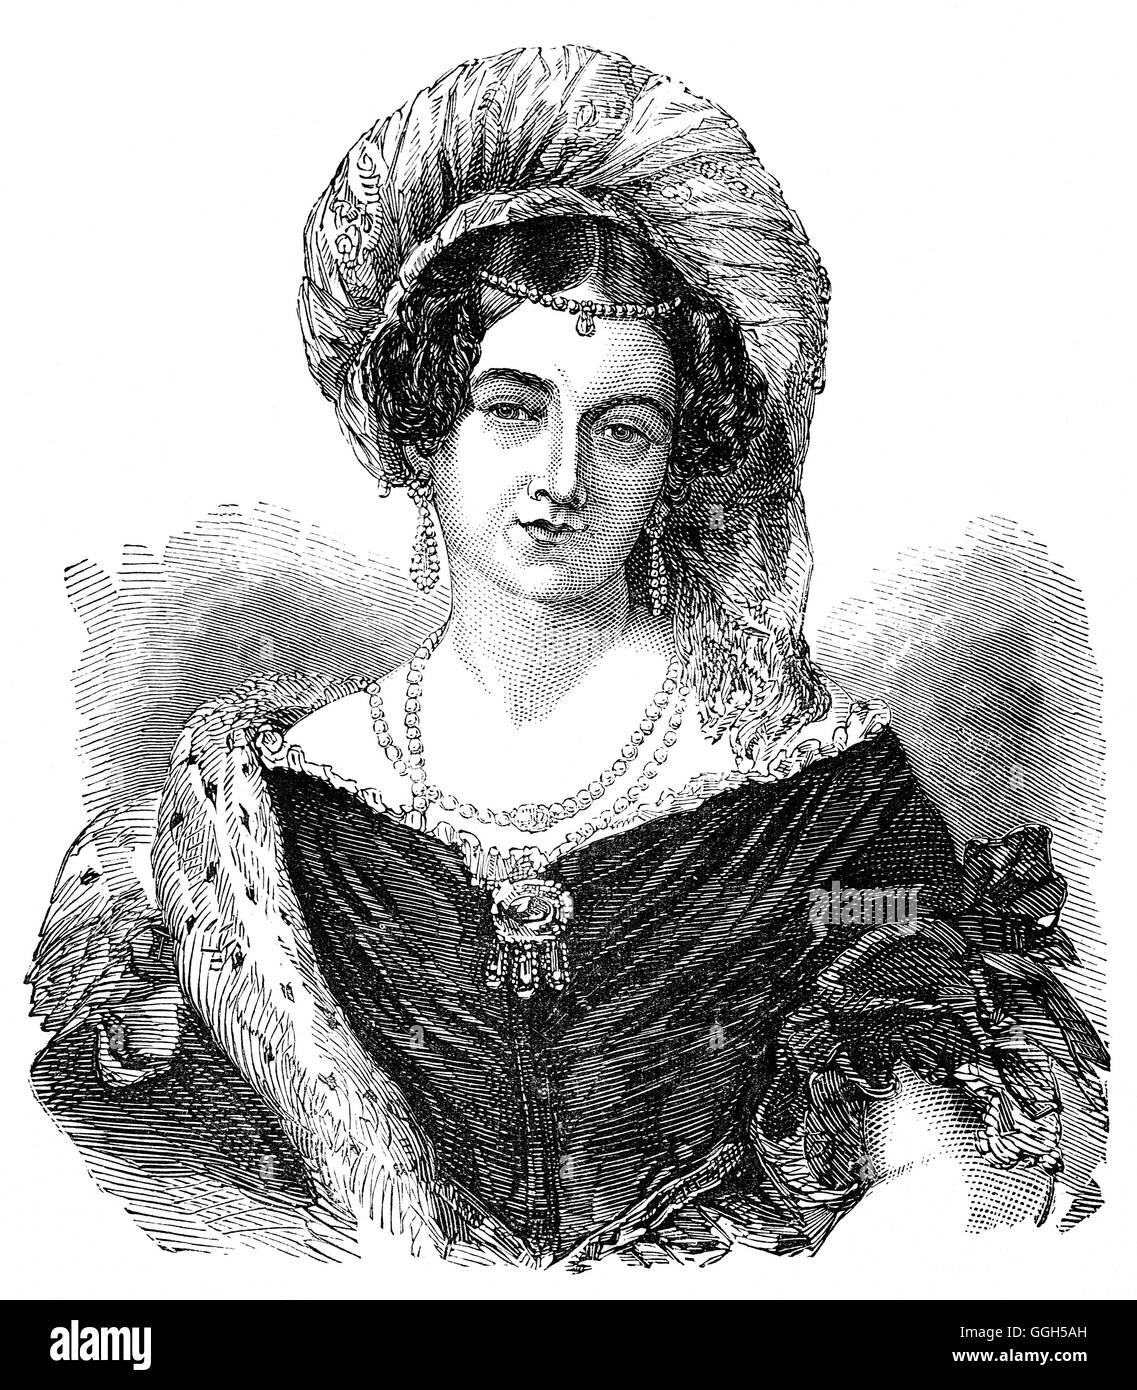 La princesa Victoria de Sajonia-Coburgo-Saalfeld (1786 - 1861) fue una princesa alemana que se casó con el Príncipe Eduardo, duque de Kent y Strathearn y posteriormente dio nacimiento a la futura reina Victoria. Foto de stock